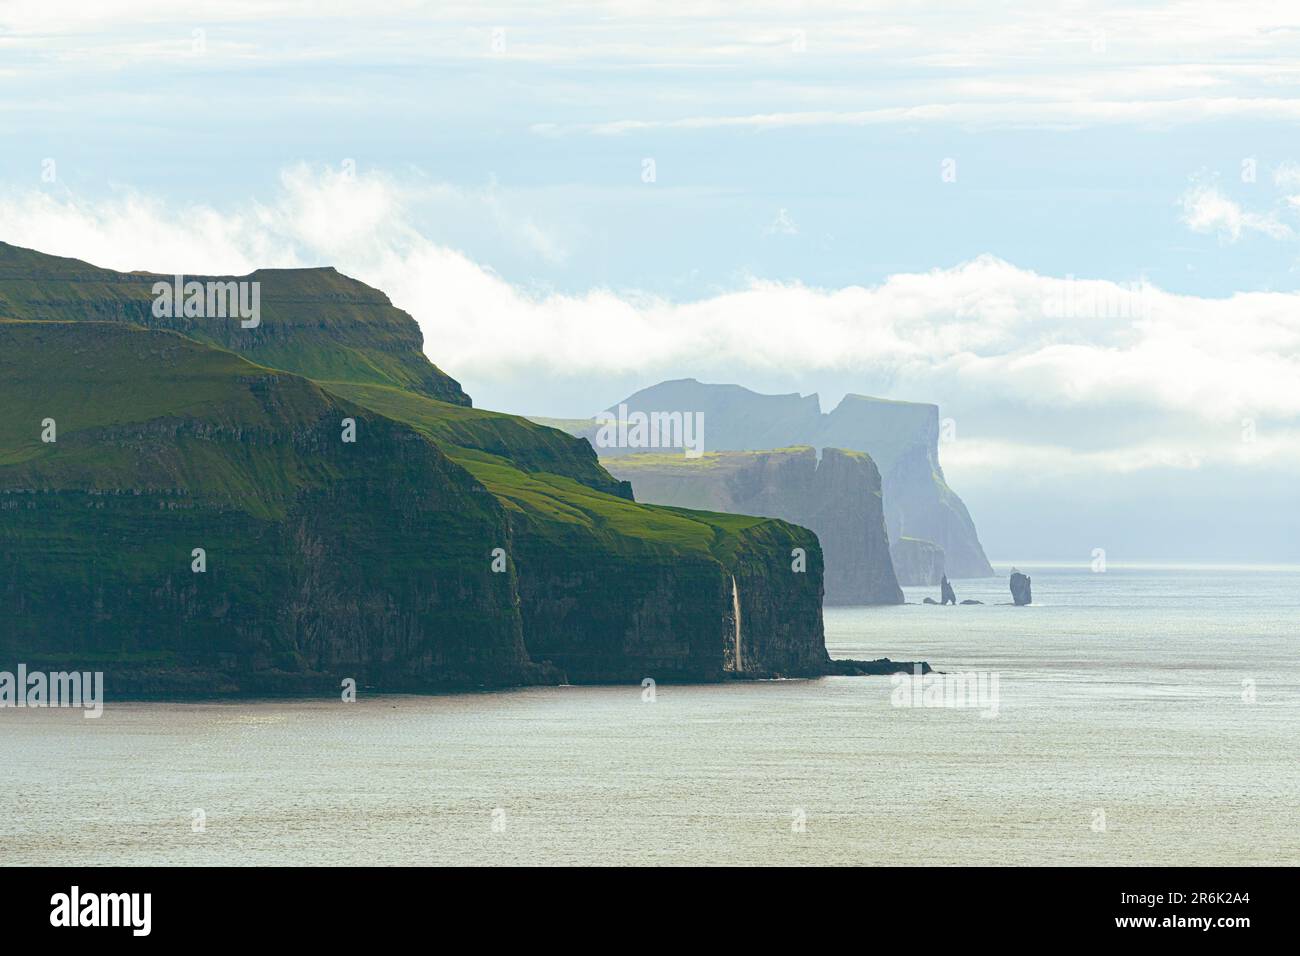 Panoramica delle maestose scogliere che si affacciano sull'Oceano Atlantico dal faro di Kallur, l'isola di Kalsoy, le isole Faroe, la Danimarca, l'Europa Foto Stock